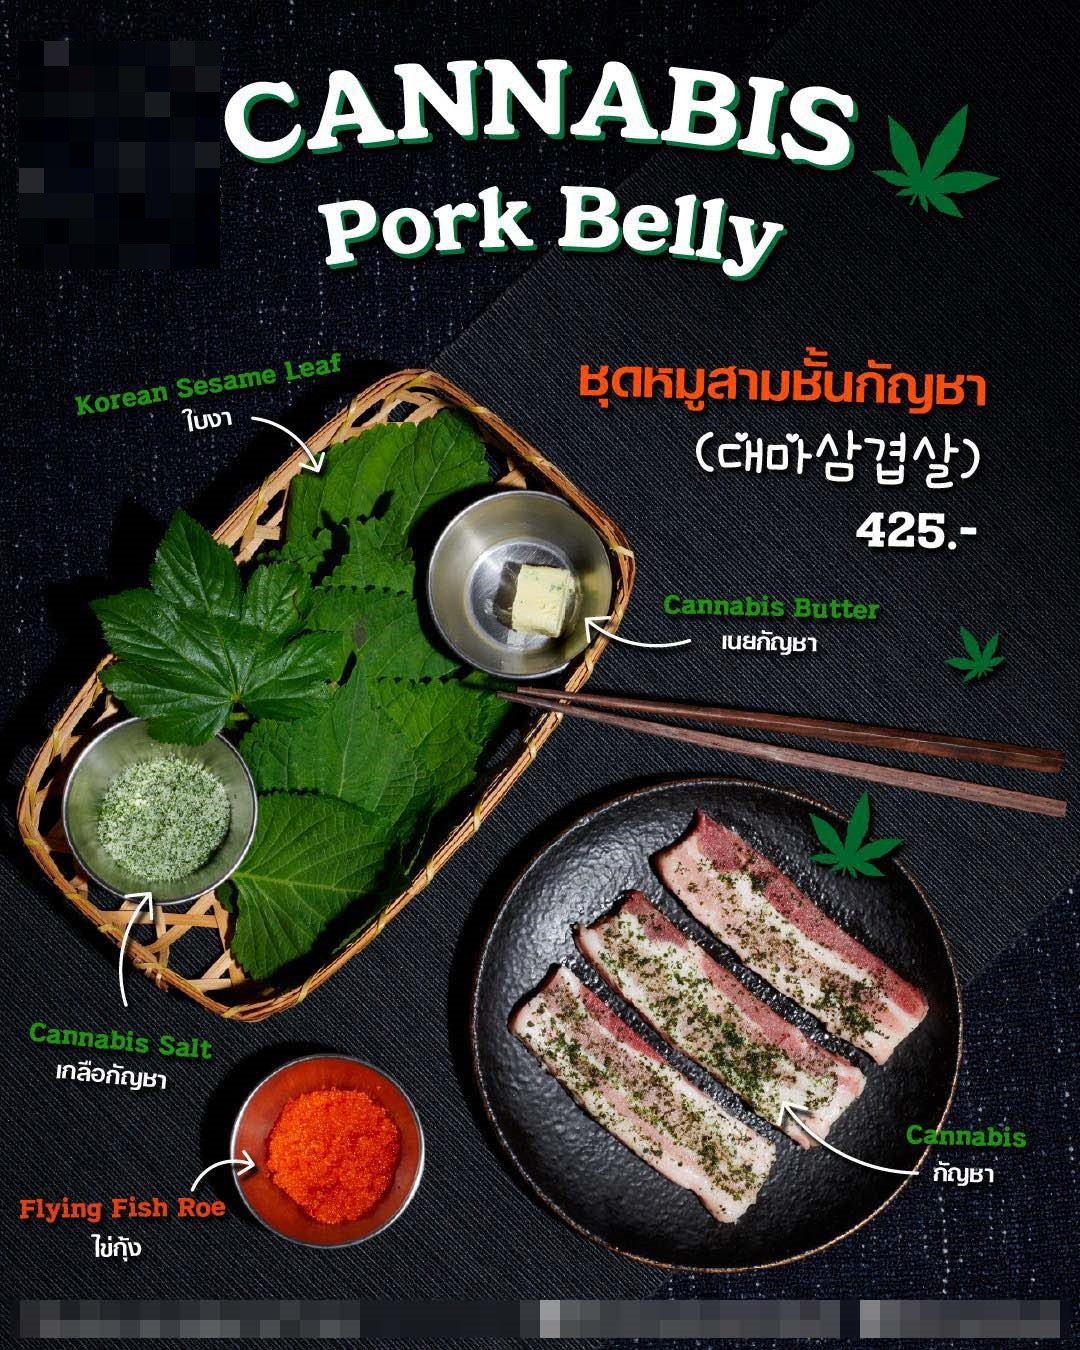 태국에서 대마초를 재료로 한 현지 음식 광고. 국가정보원 제공